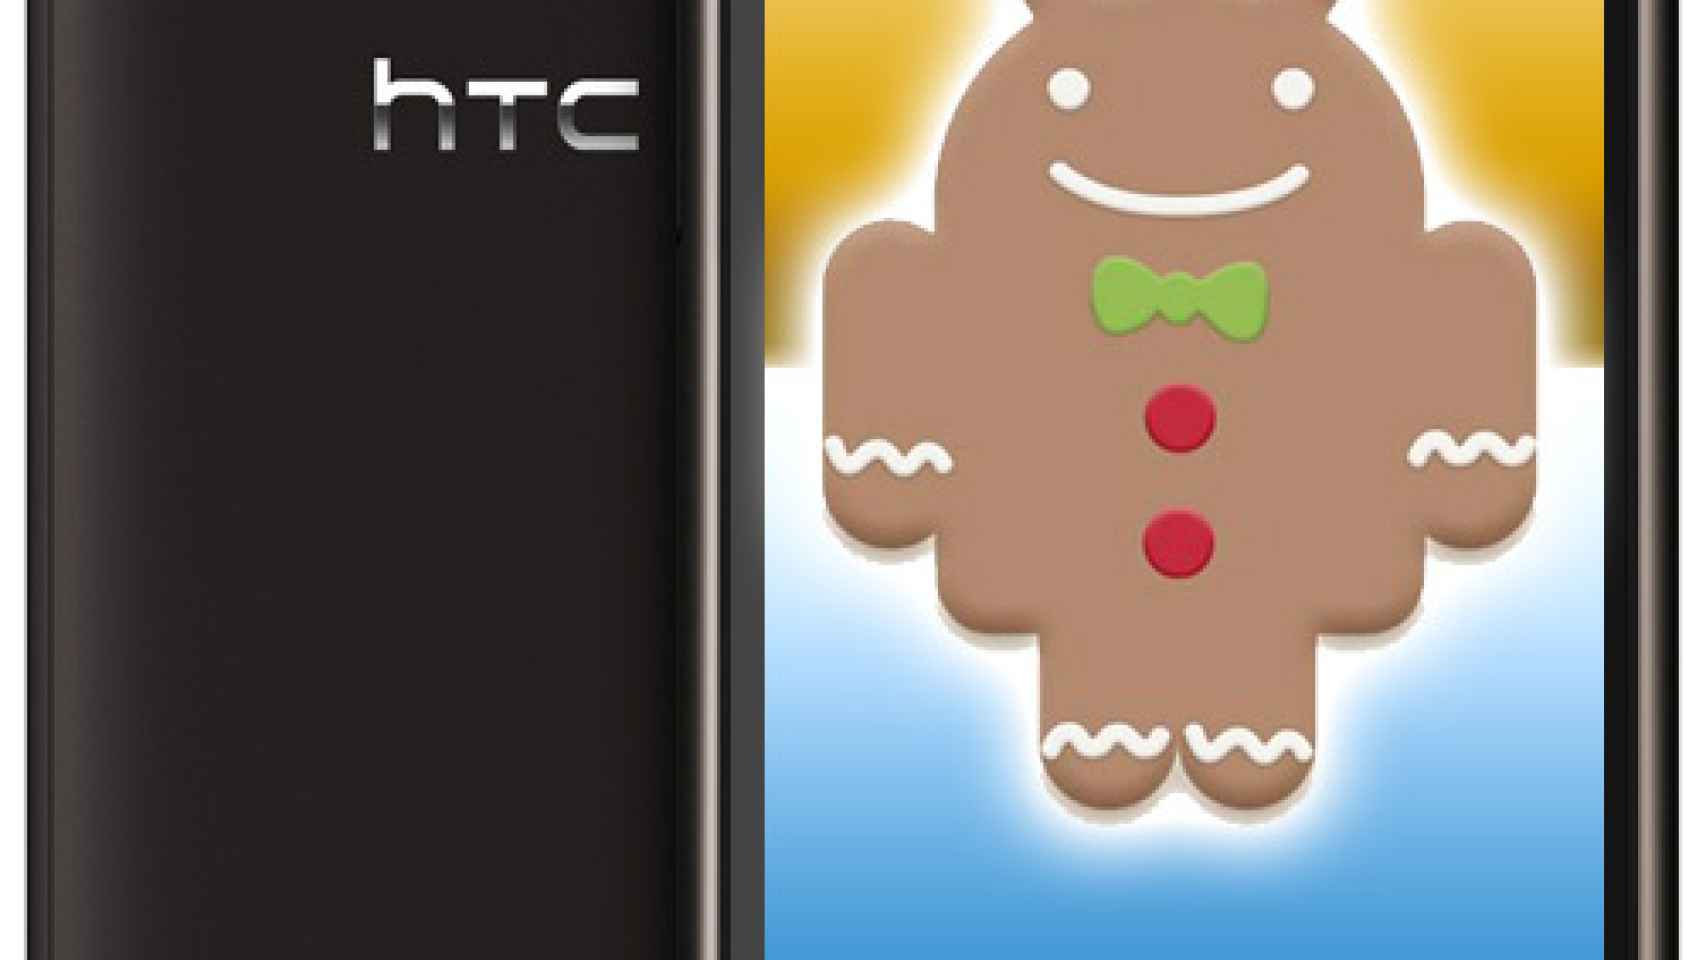 Actualización Gingerbread Android 2.3 para HTC Desire ya disponible